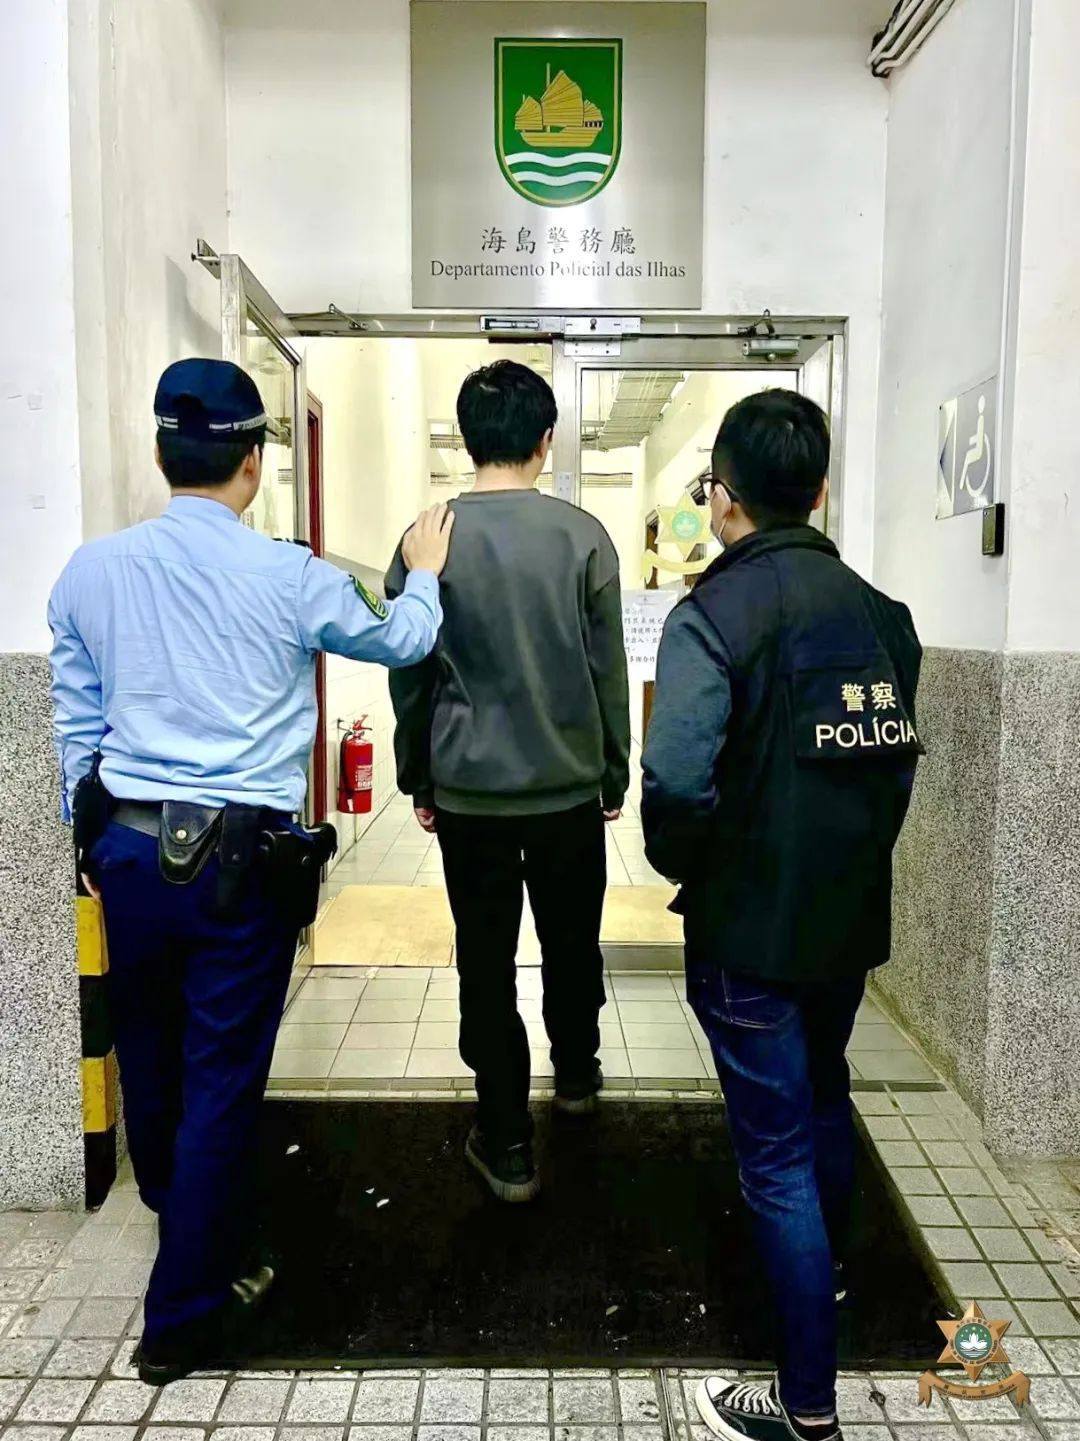 マカオ、同行の友人からカジノチップ盗む…中国人の男逮捕